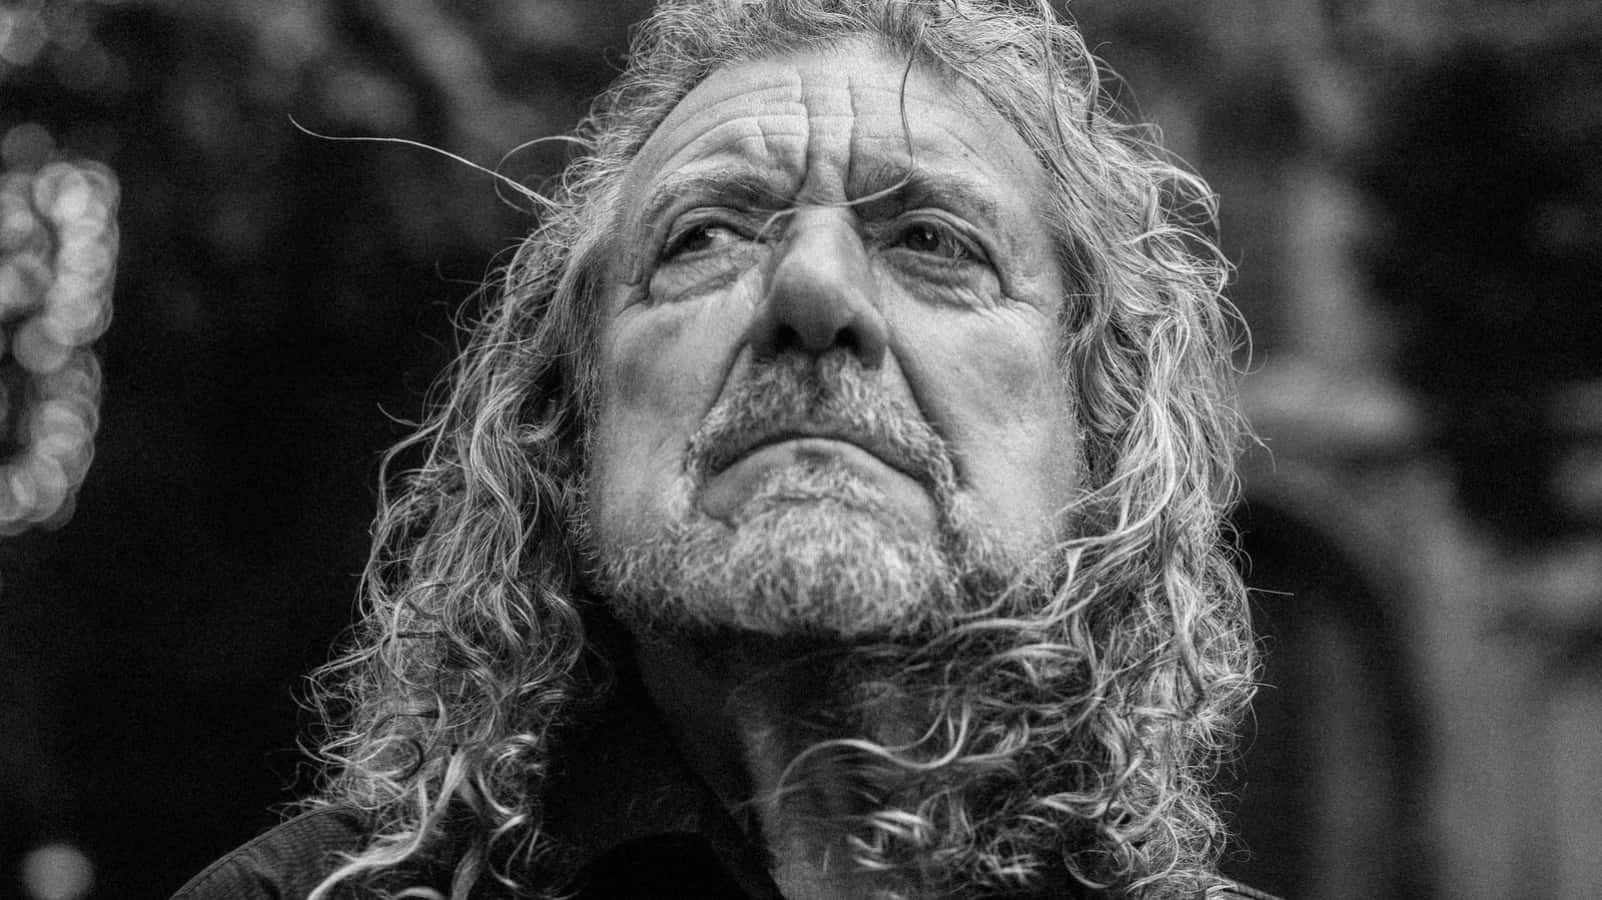 Legendariskerockern Robert Plant